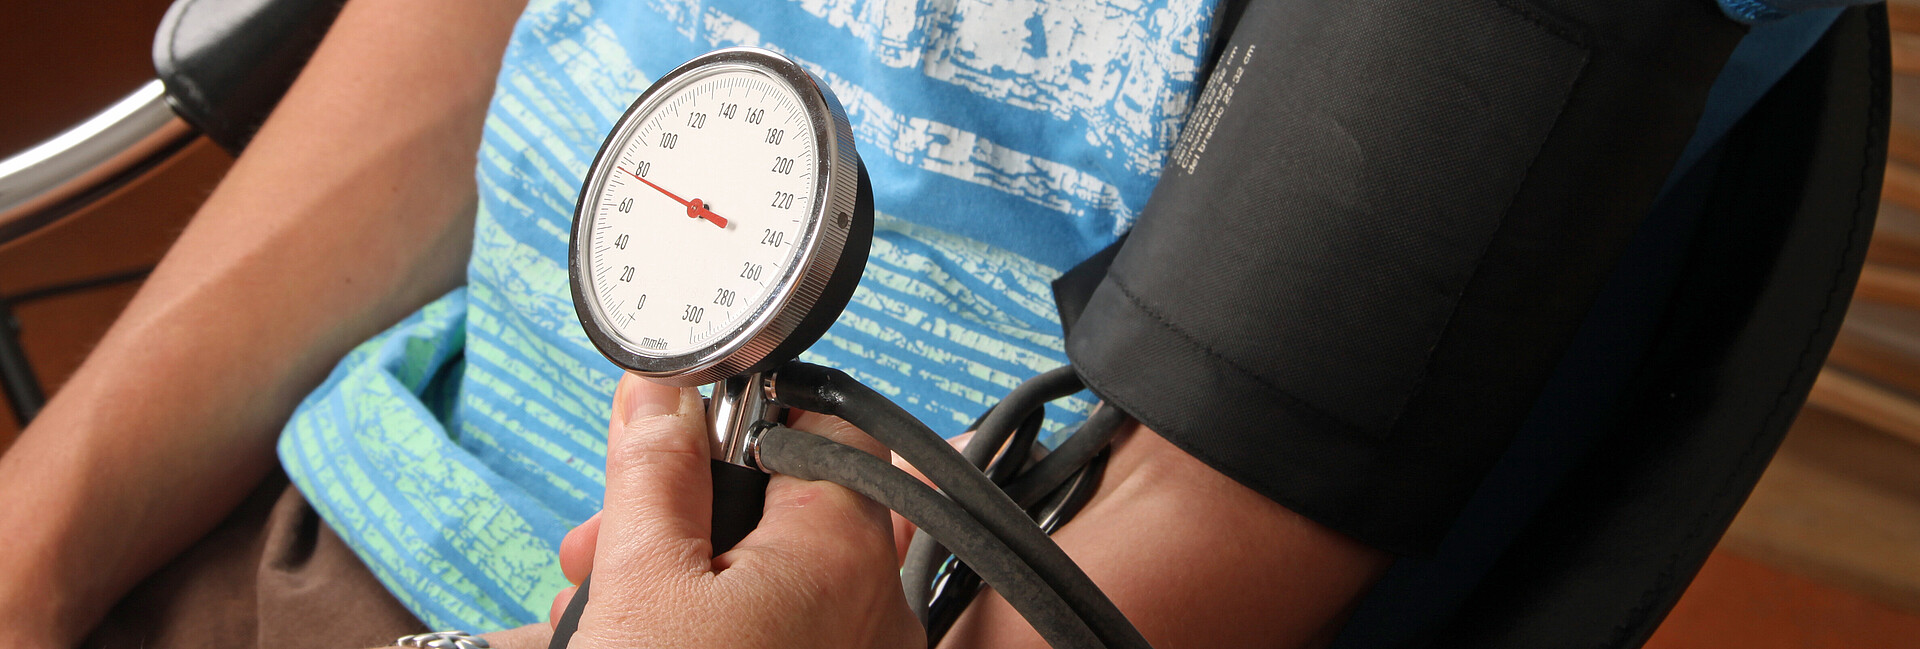 Einem jungen Mann wird der Blutdruck gemessen